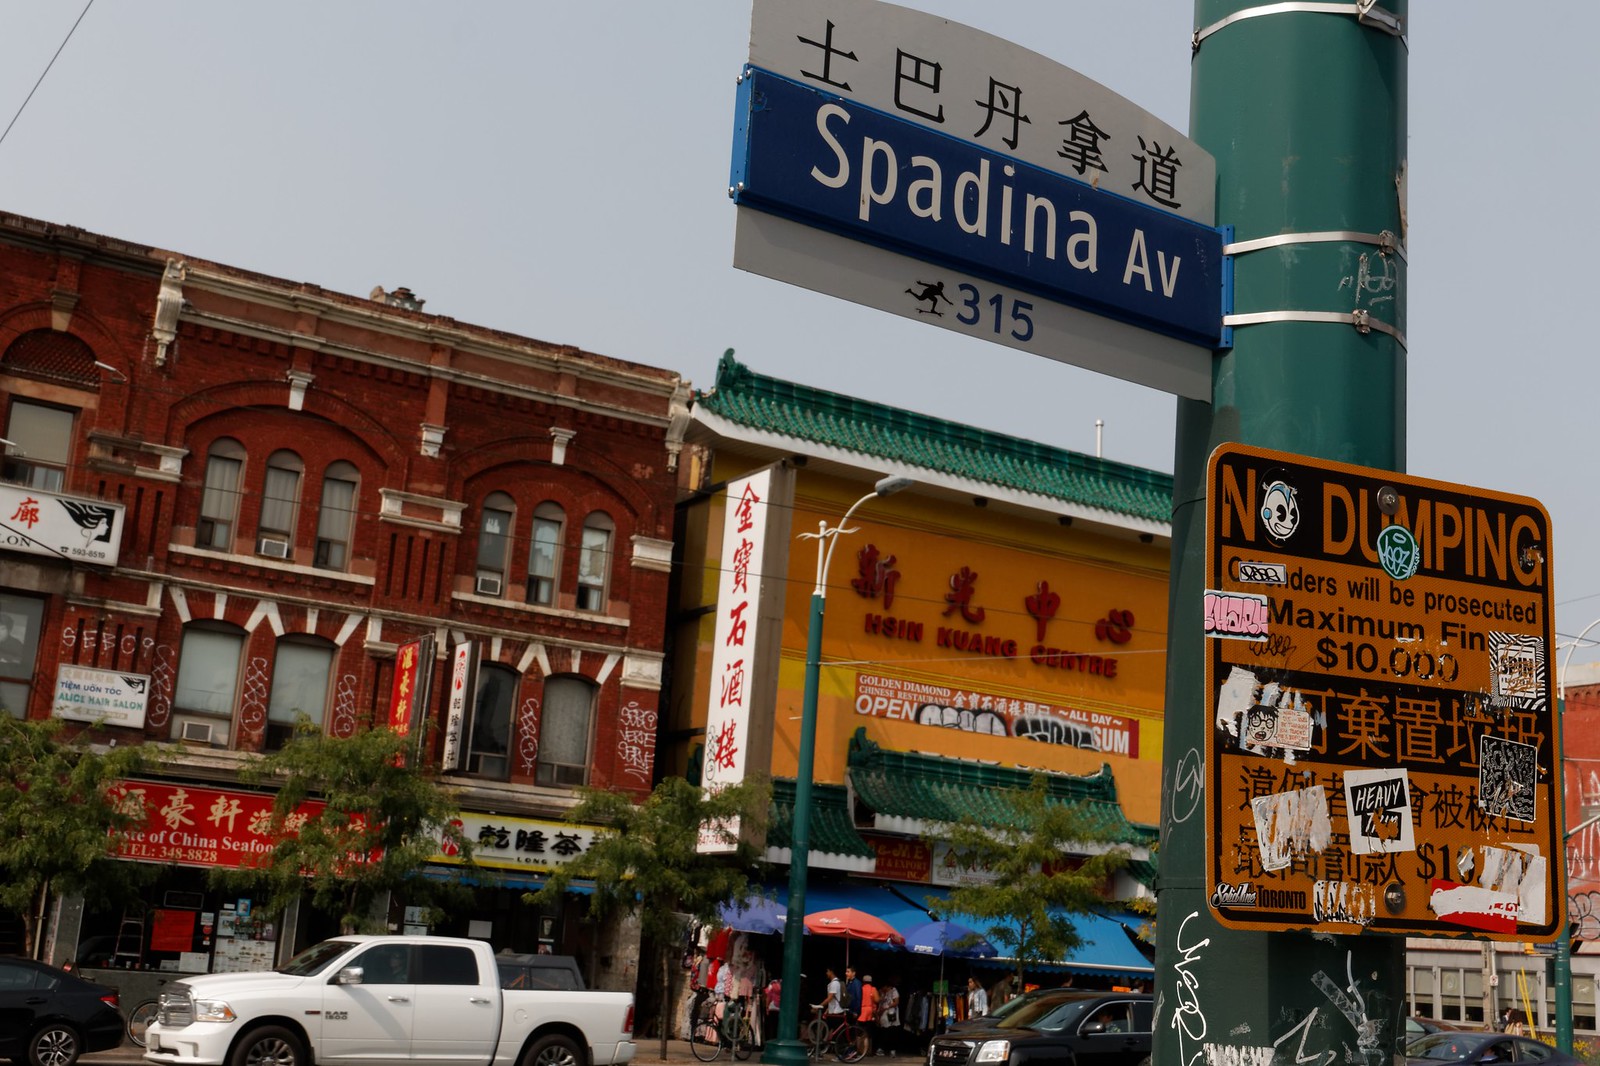 Spadina Avenue